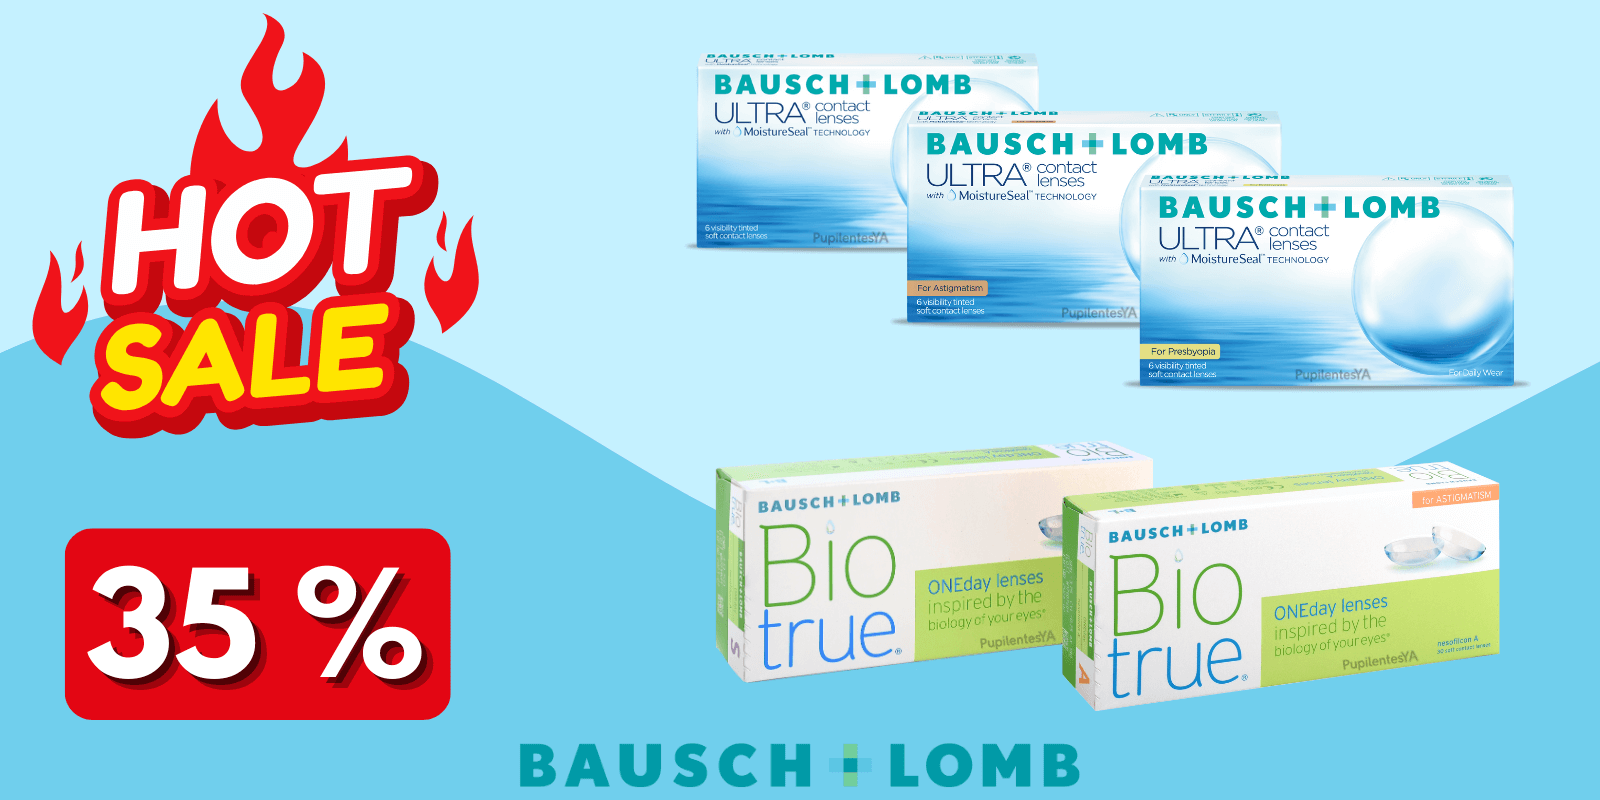 Promo Bausch Lomb Ultra BioTrue HotSale